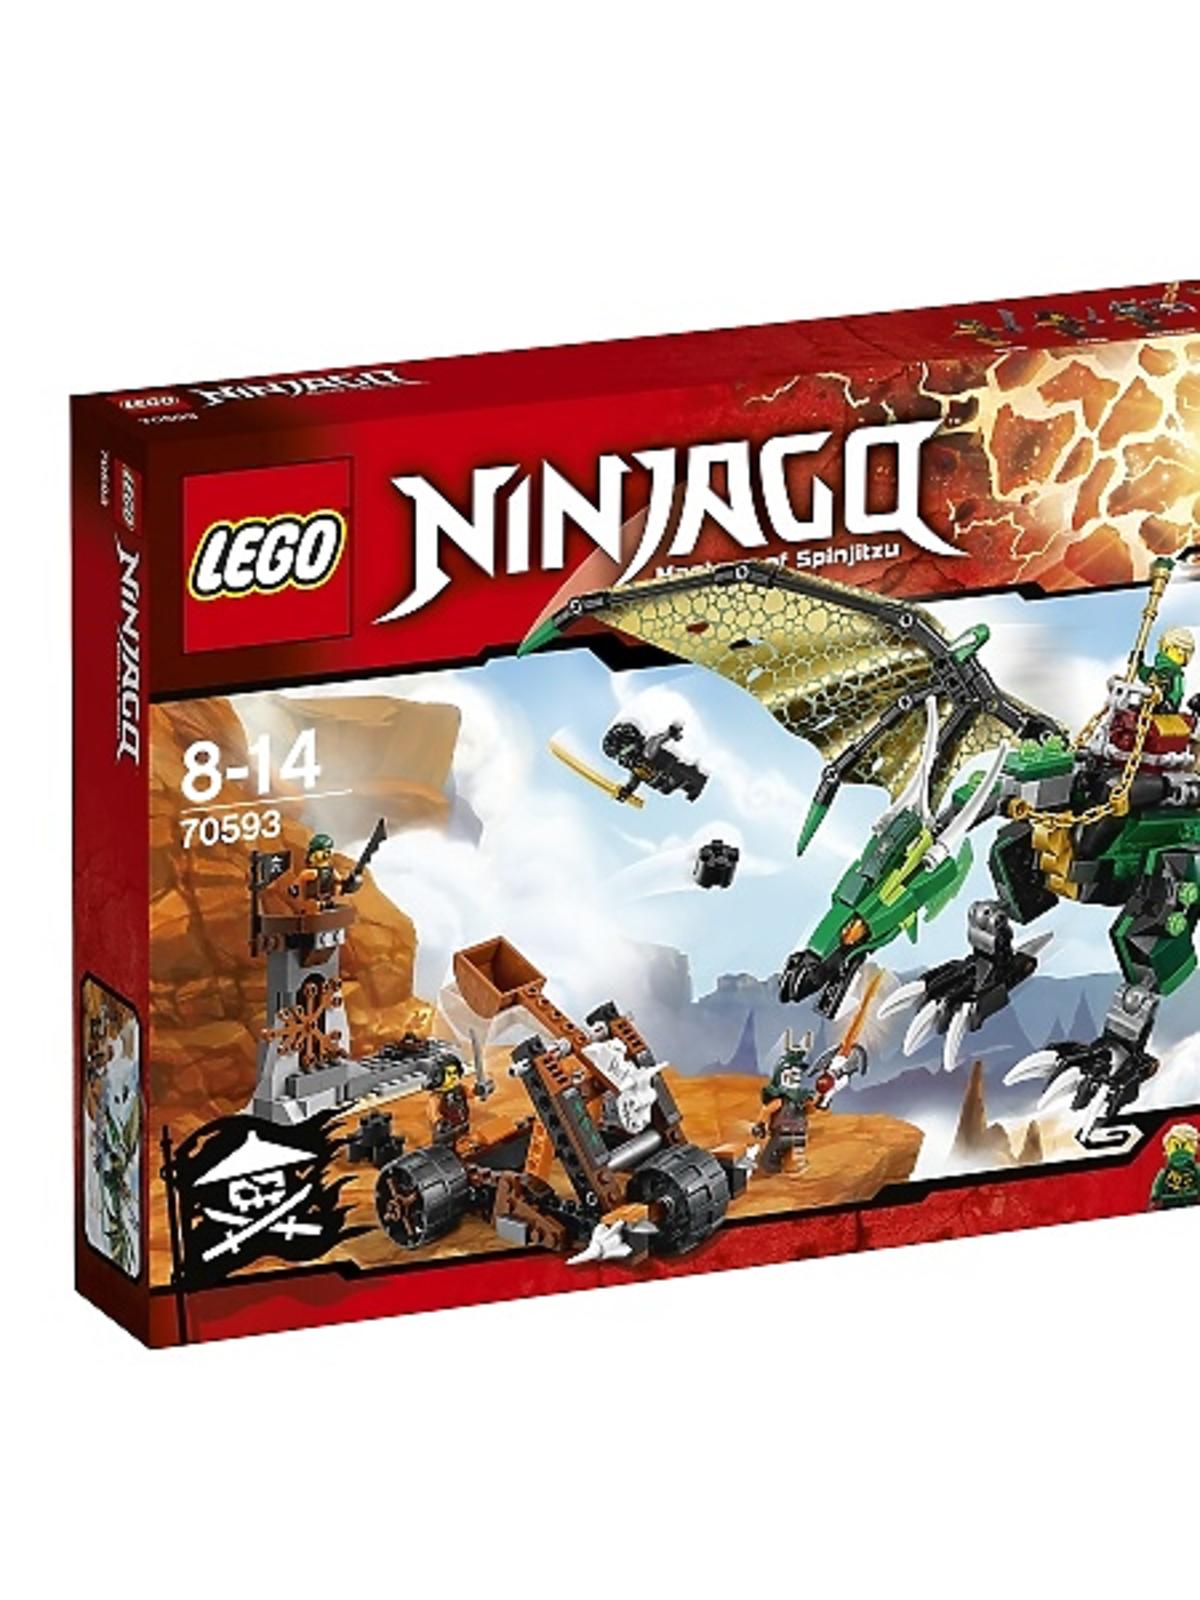 Lego Ninjago Zielony Smok 70593 - katalog produktów dla dzieci na babyonline.pl